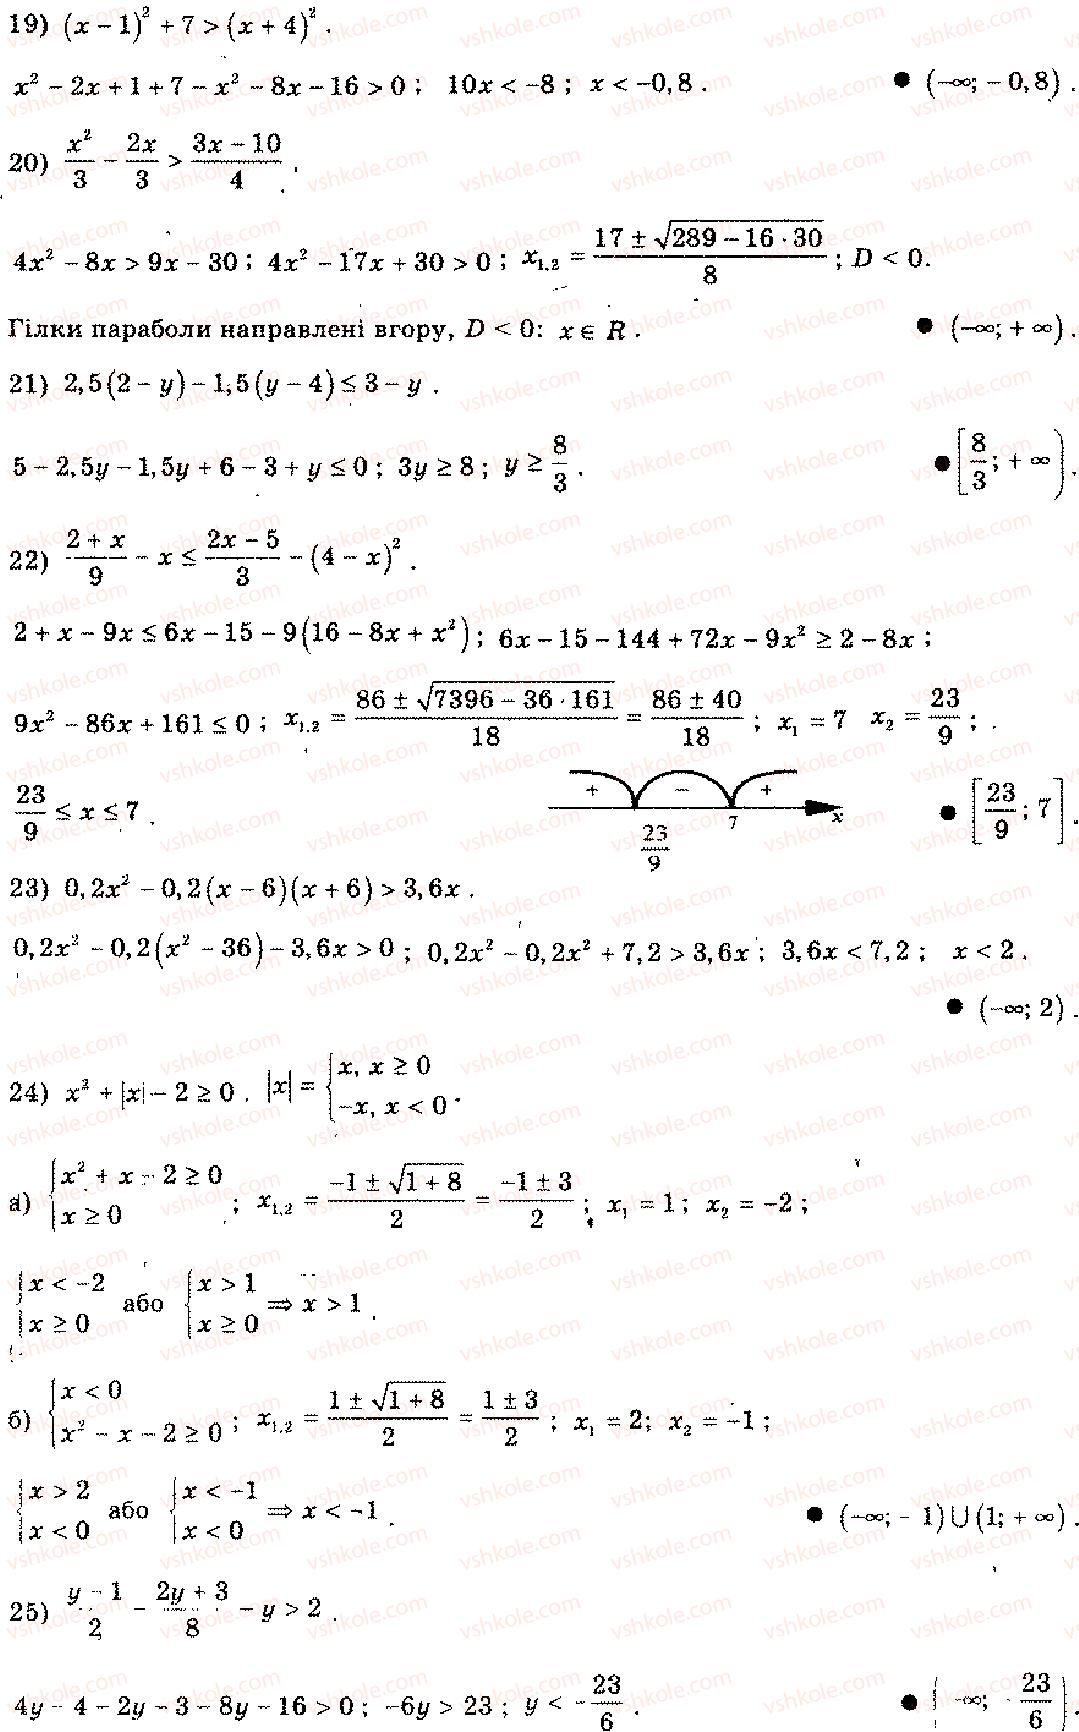 11-algebra-mi-shkil-zi-slepkan-os-dubinchuk-2006--rozdil-15-povtorennya-kursu-algebri-osnovnoyi-shkoli-4-3-rnd3410.jpg